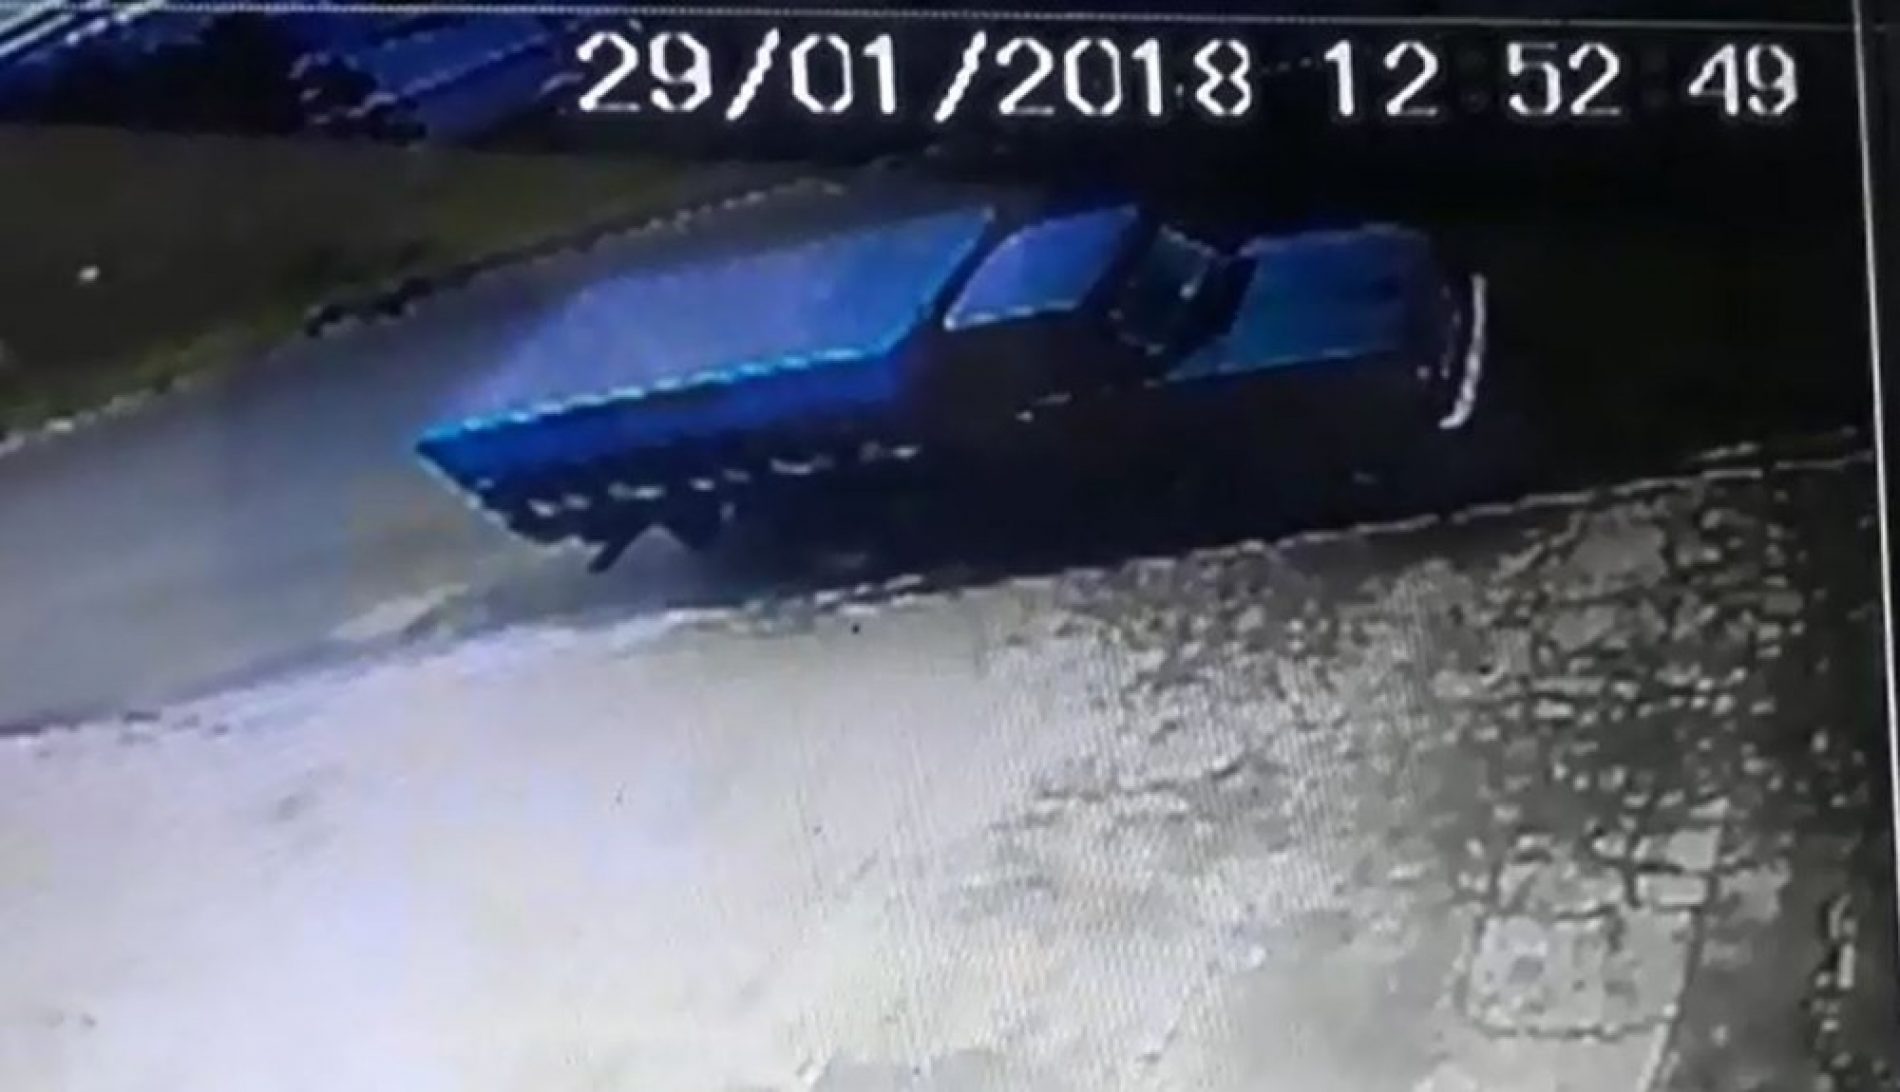 REGIÃO: Homem tenta recuperar veículo furtado, paga resgate de R$ 2 mil e cai em golpe